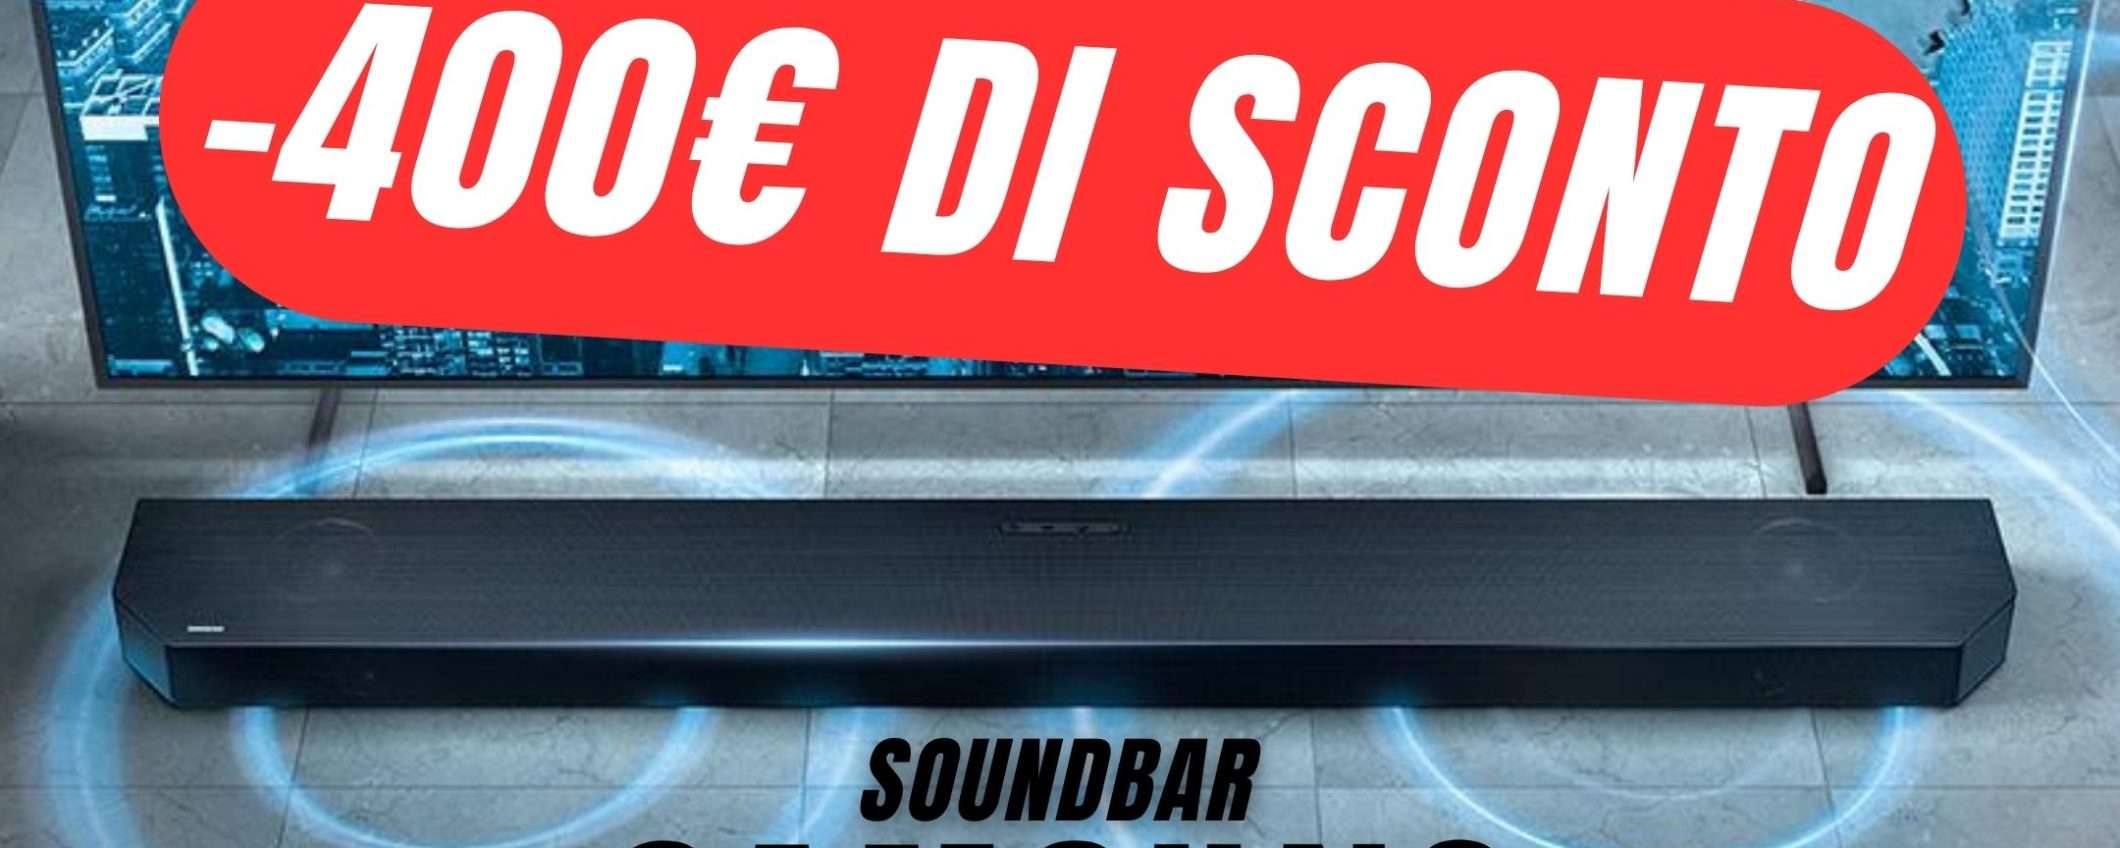 SCONTO FOLLE DA -400€ per la Soundbar Samsung!